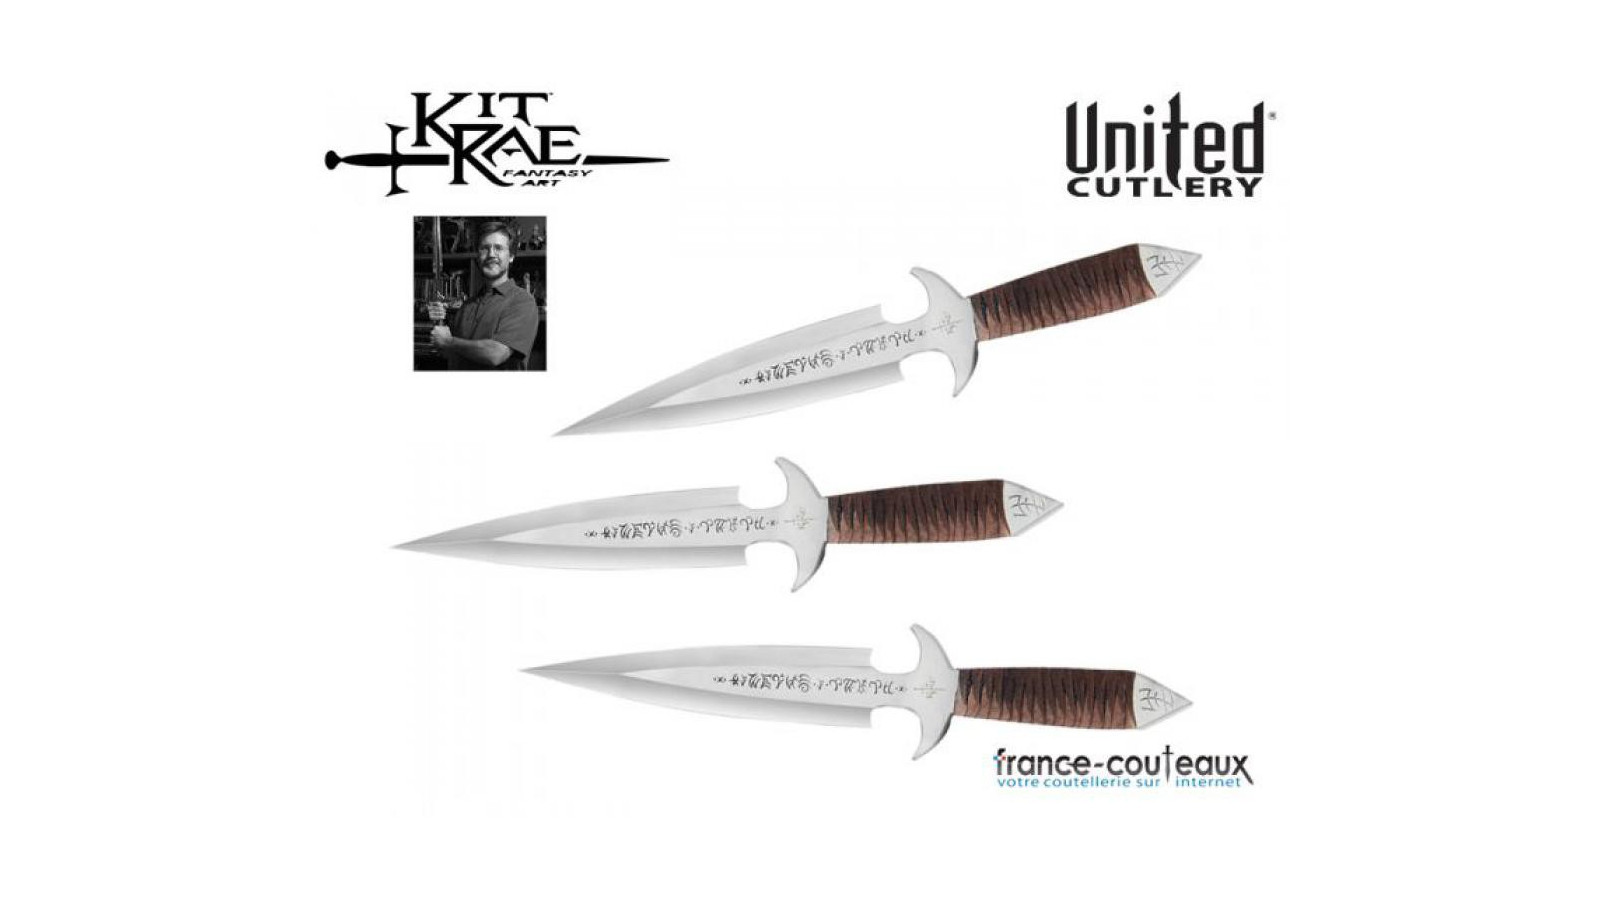 Set de 3 couteaux de lancer Kit Rae - Black Jet